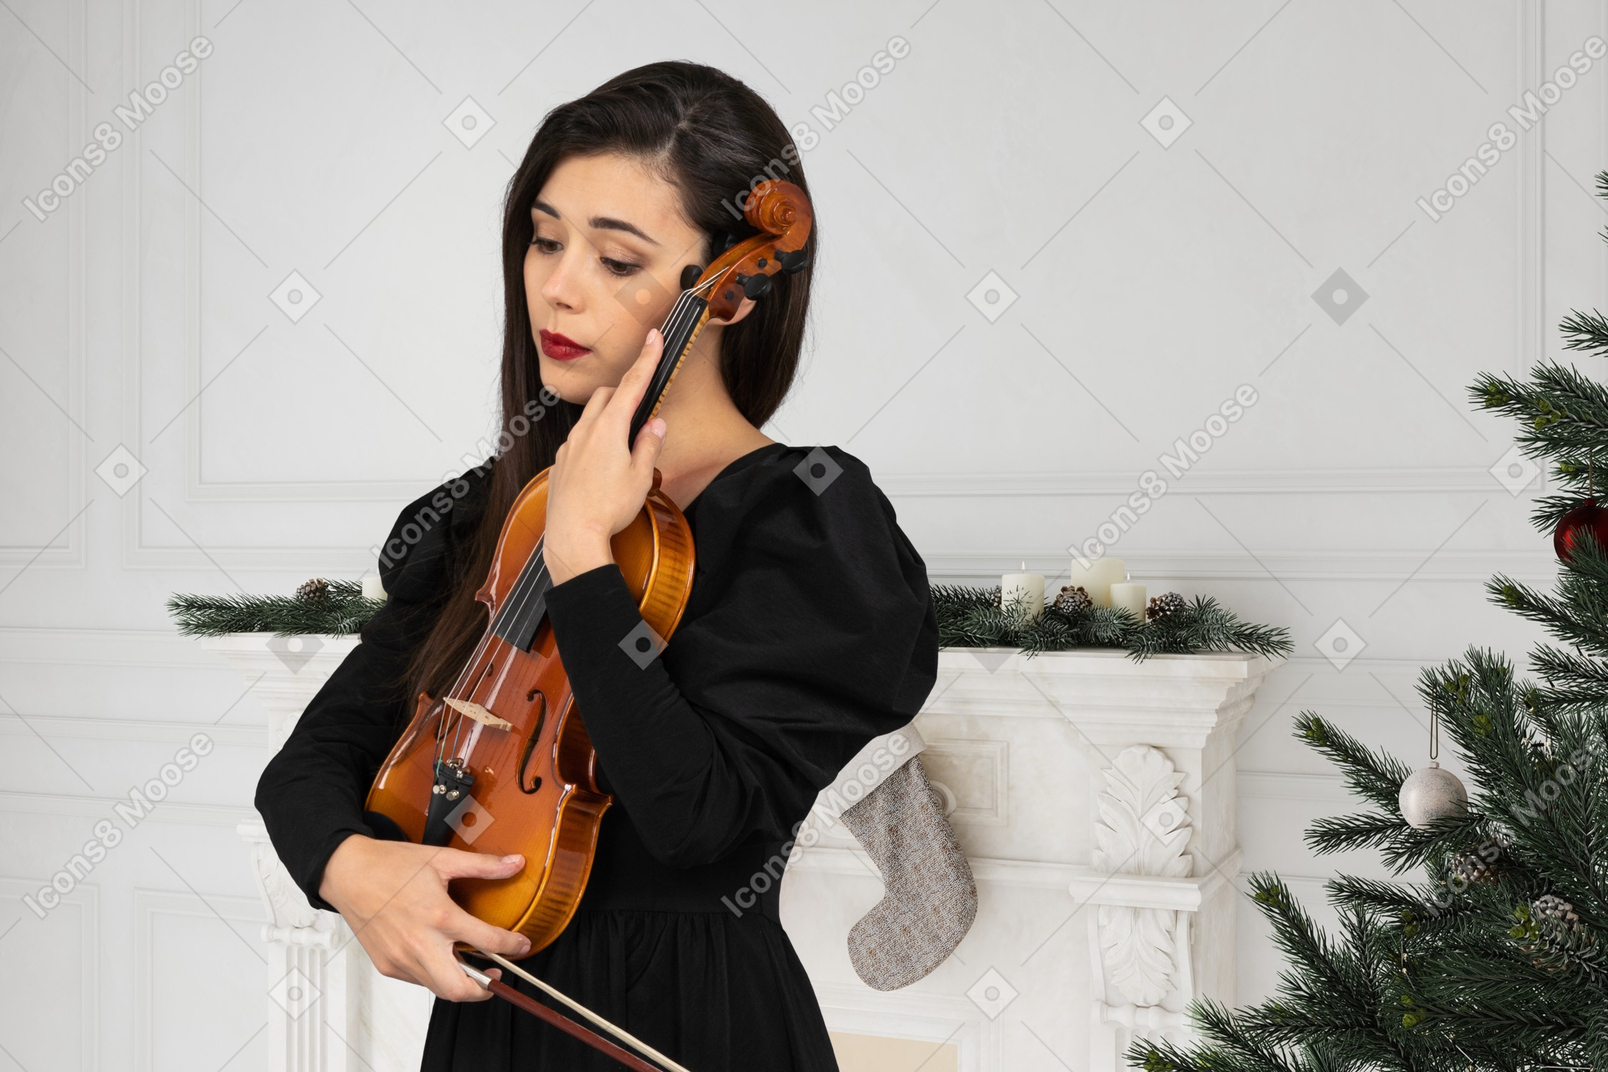 La giovane donna ha ricevuto un violino come regalo di natale